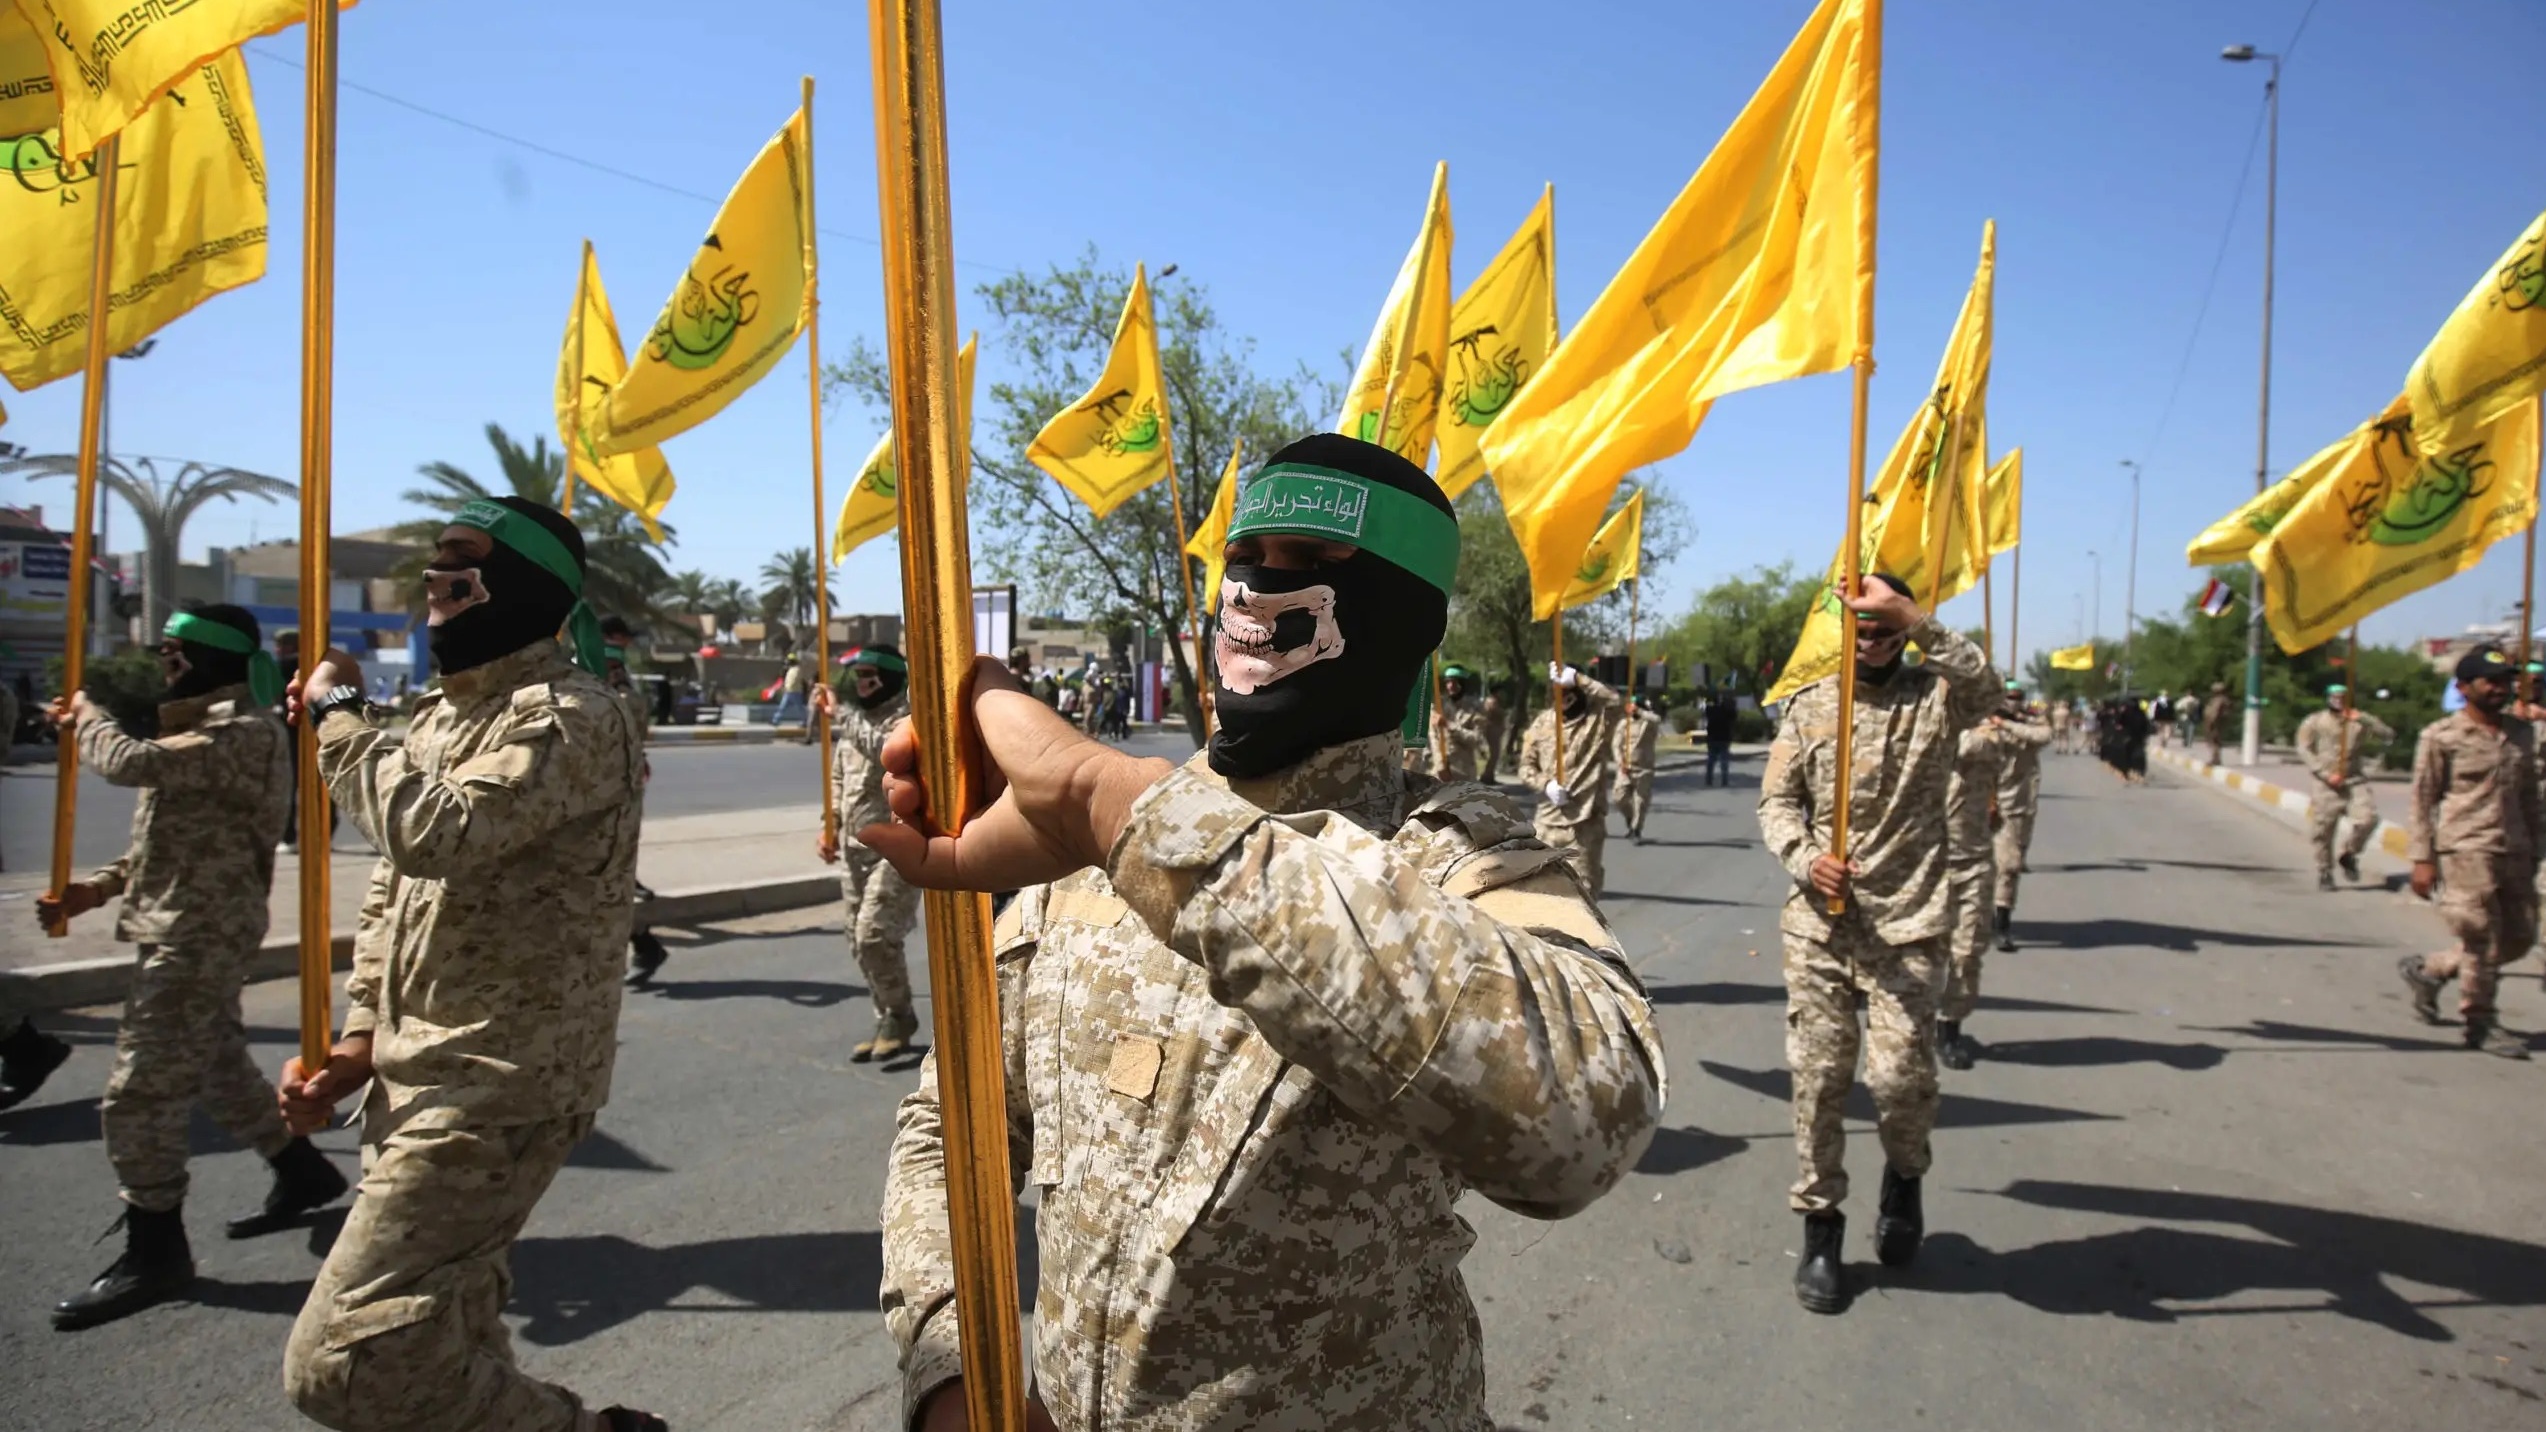 مقاتلون من حركة النجباء الشيعية الموالية لإيران خلال استعراض للقوة في بغداد، في 31 أيار (مايو) 2019